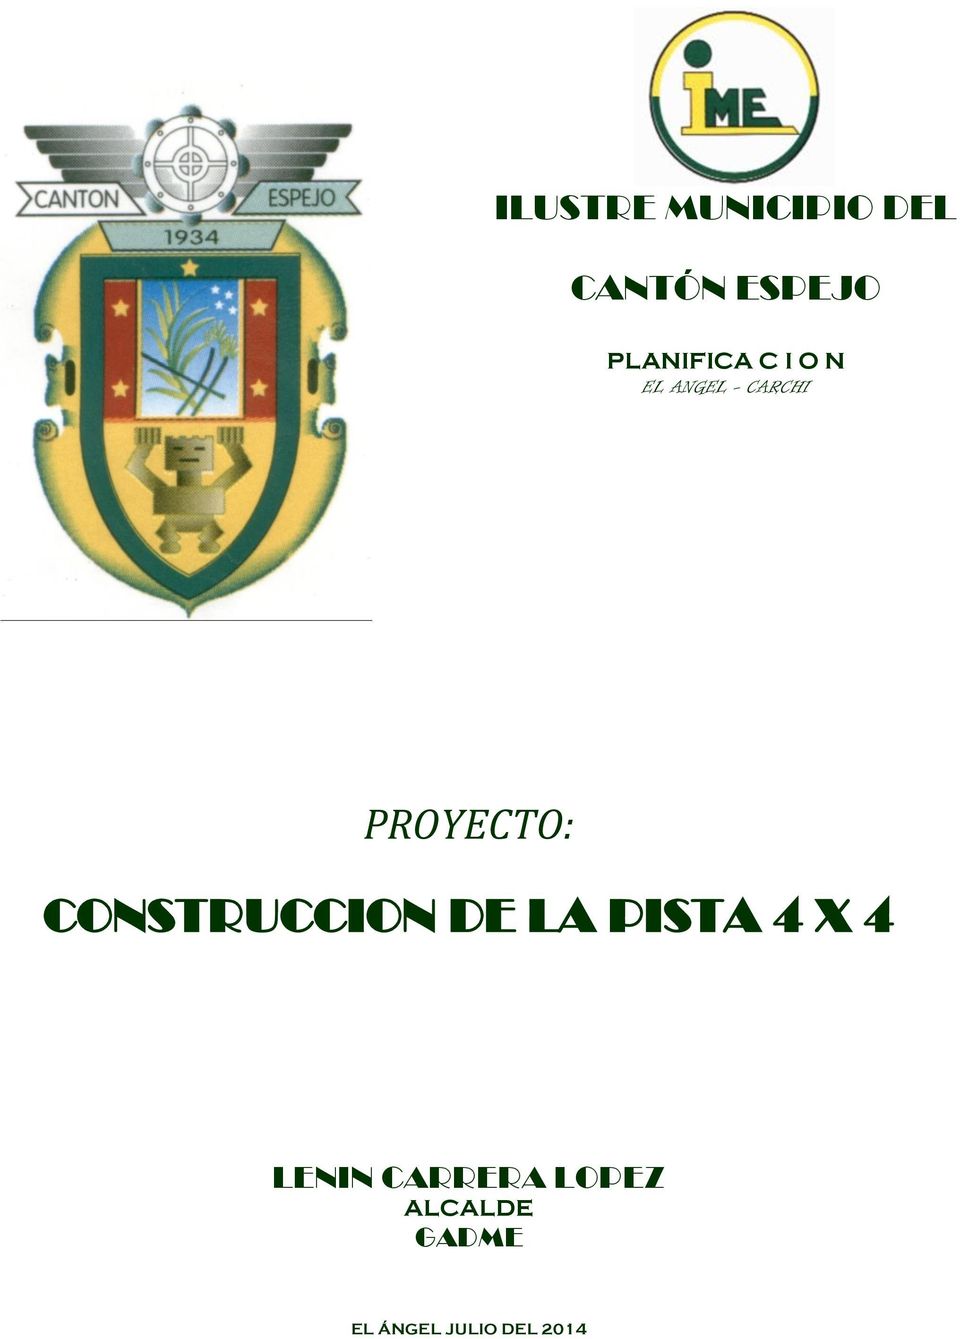 PROYECTO: CONSTRUCCION DE LA PISTA 4 4